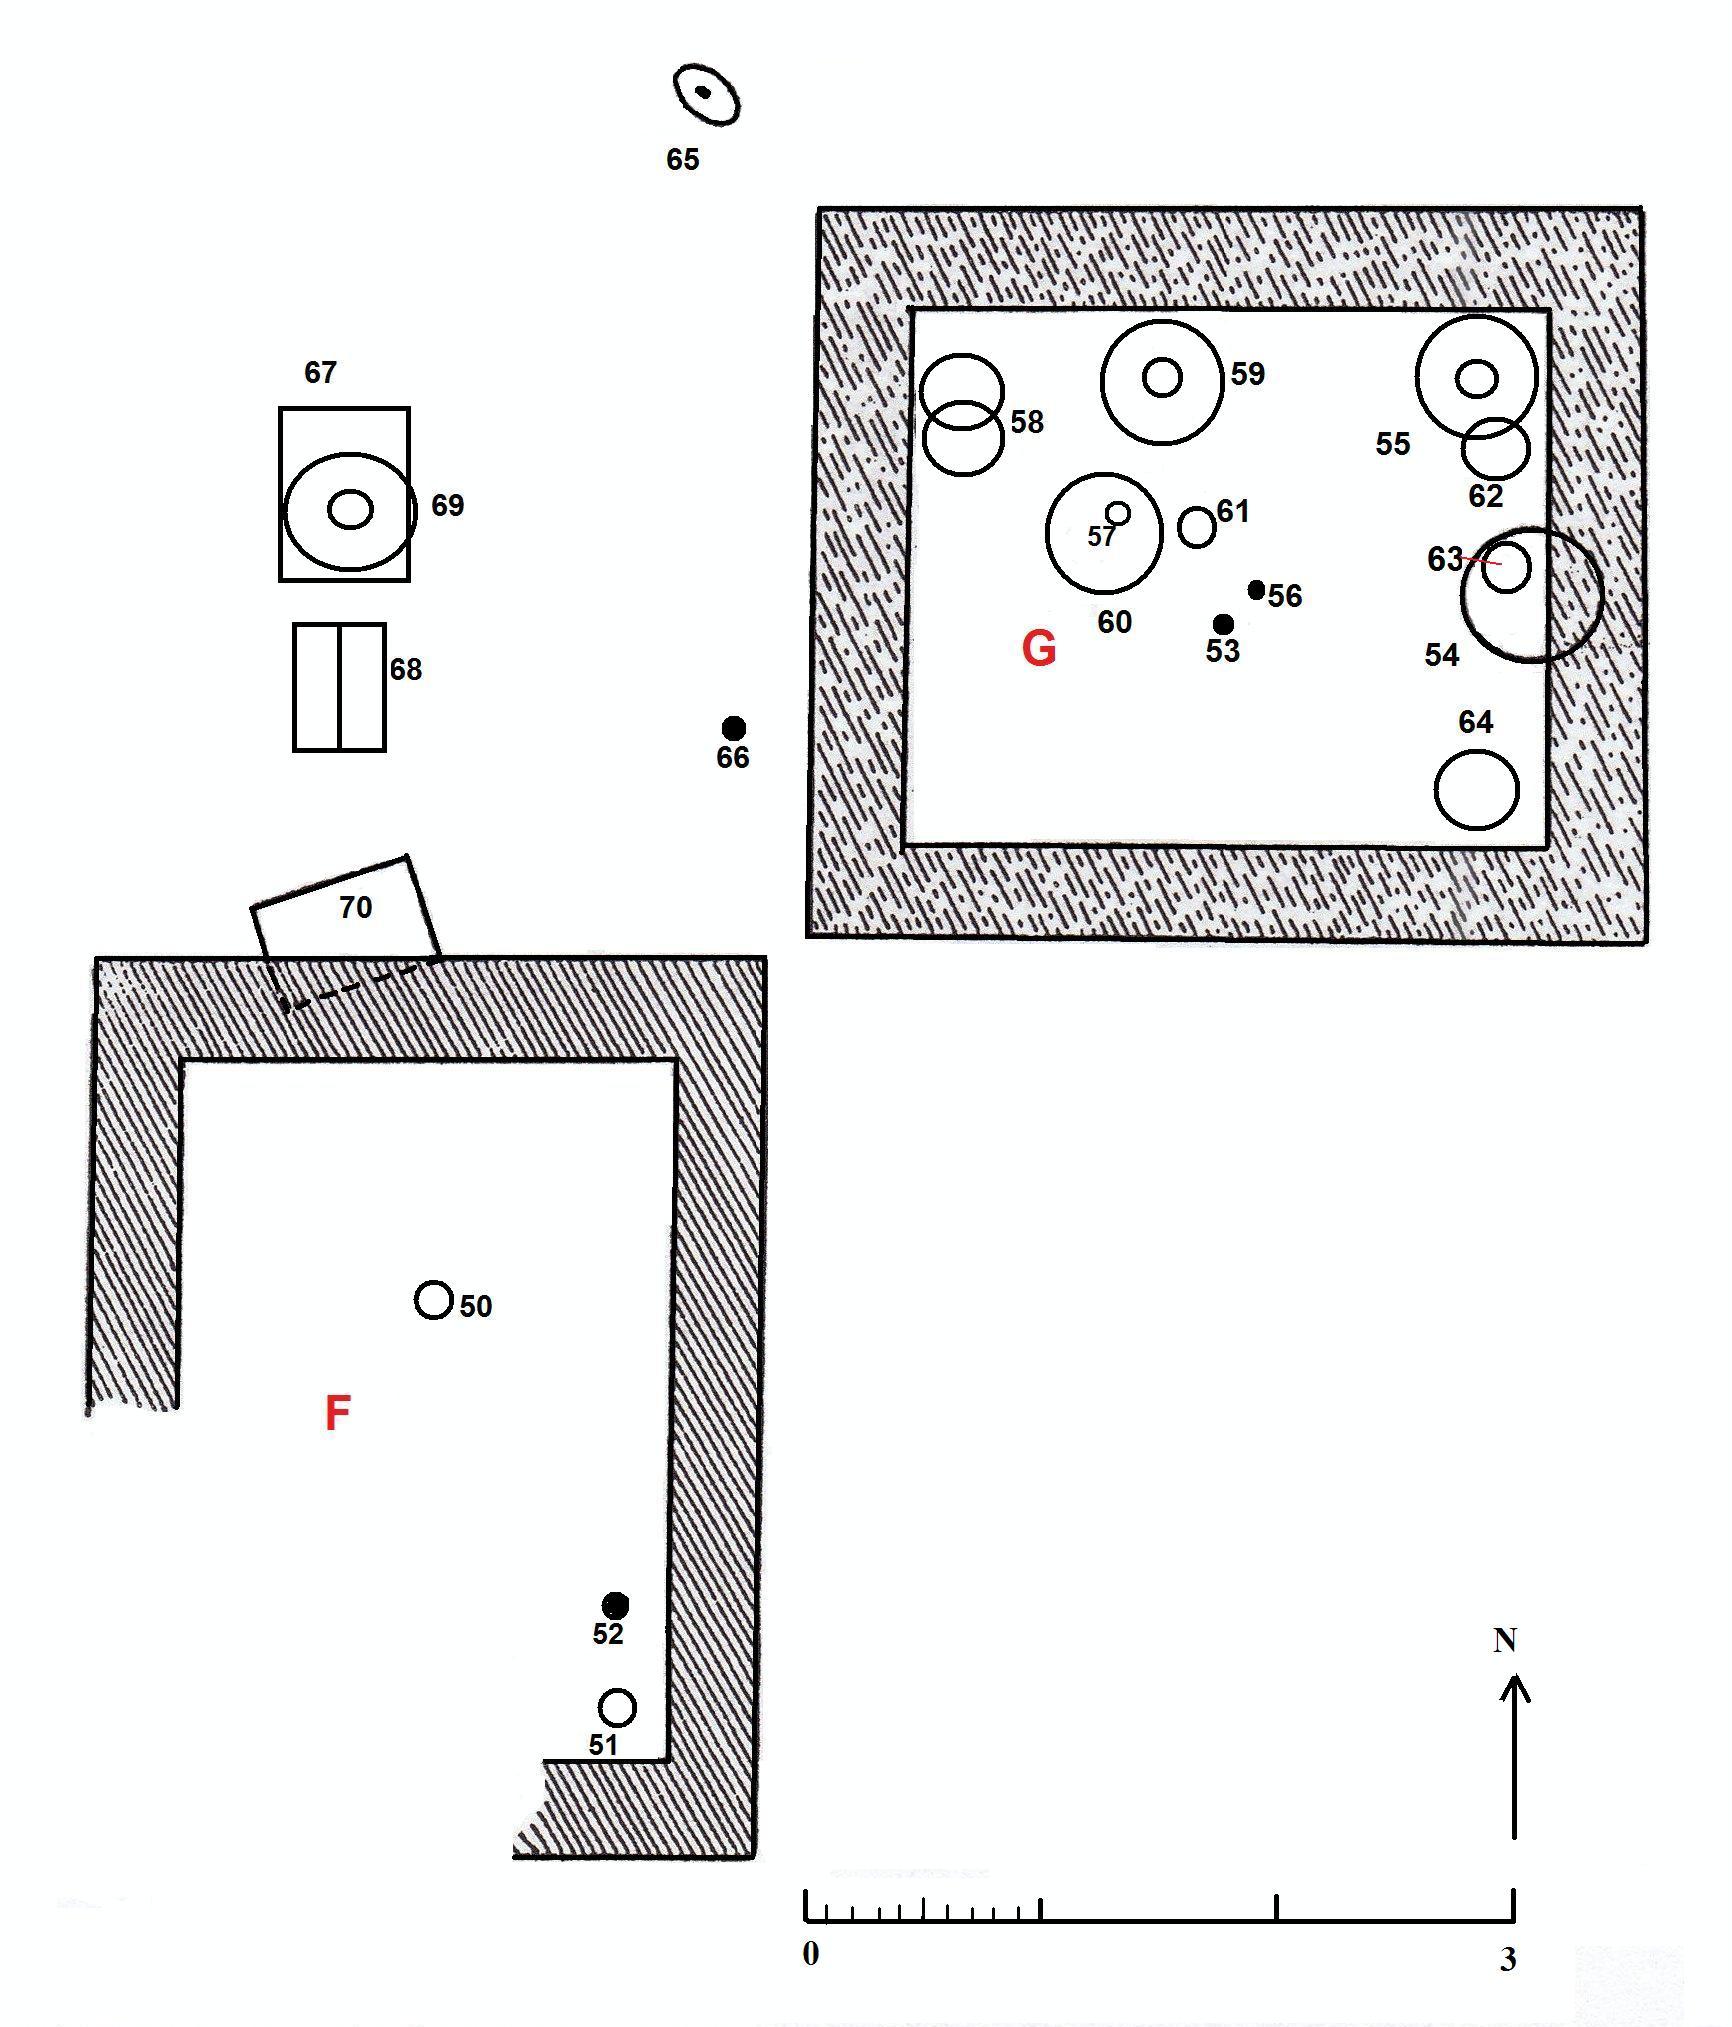 Necropoli di Albintimilium, area ad ovest recinto G, tomba 65 (tomba a incinerazione, area ad uso funerario) - Ventimiglia (IM)  (metà/ metà Età romana imperiale)